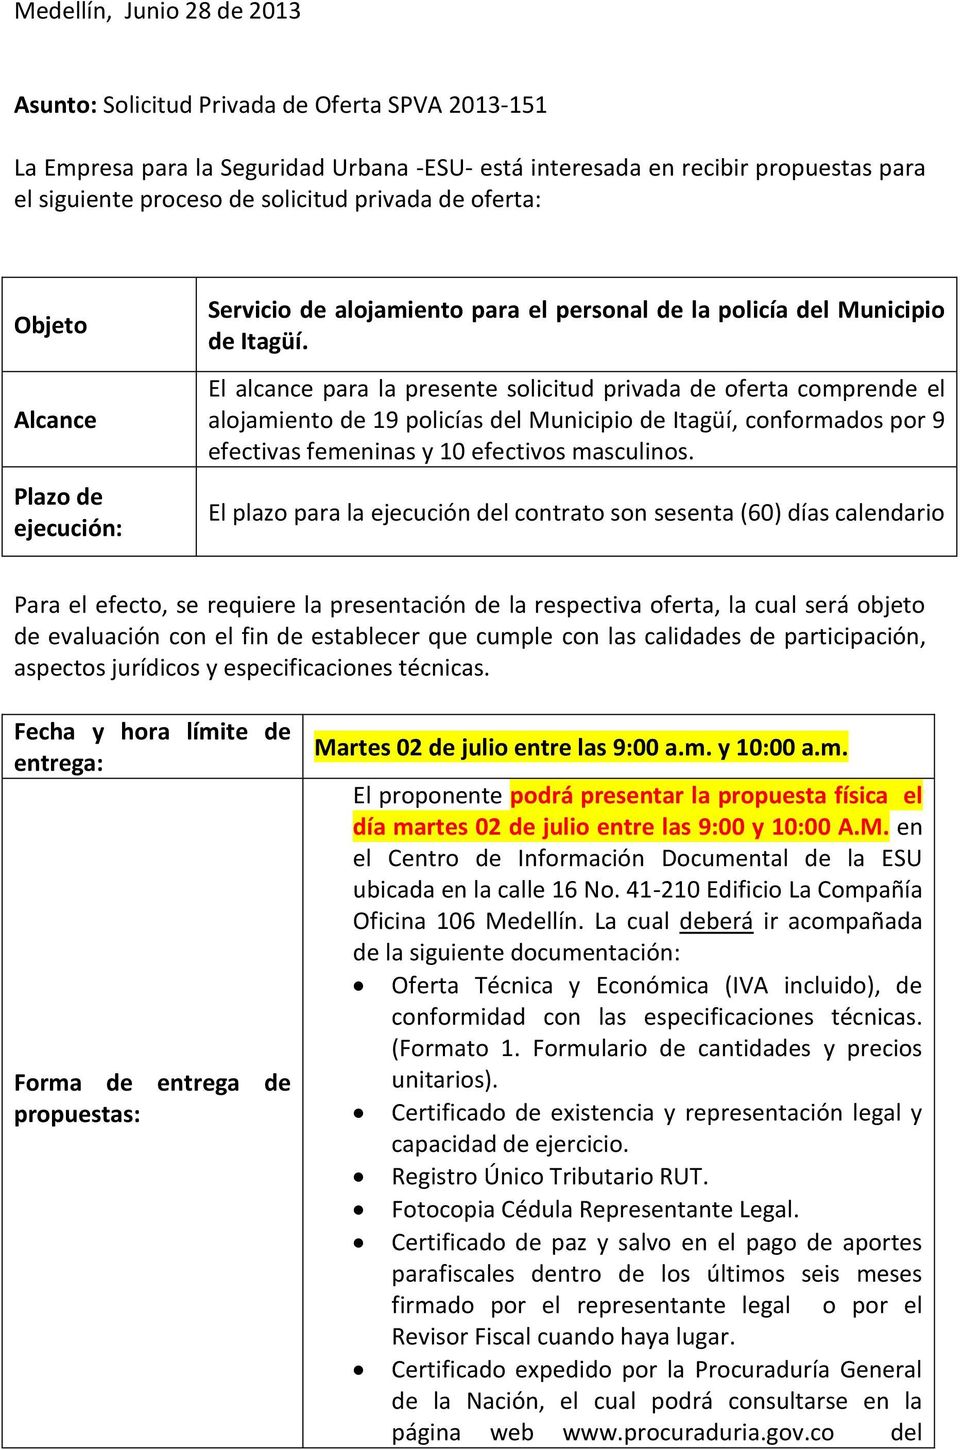 El alcance para la presente solicitud privada de oferta comprende el alojamiento de 19 policías del Municipio de Itagüí, conformados por 9 efectivas femeninas y 10 efectivos masculinos.